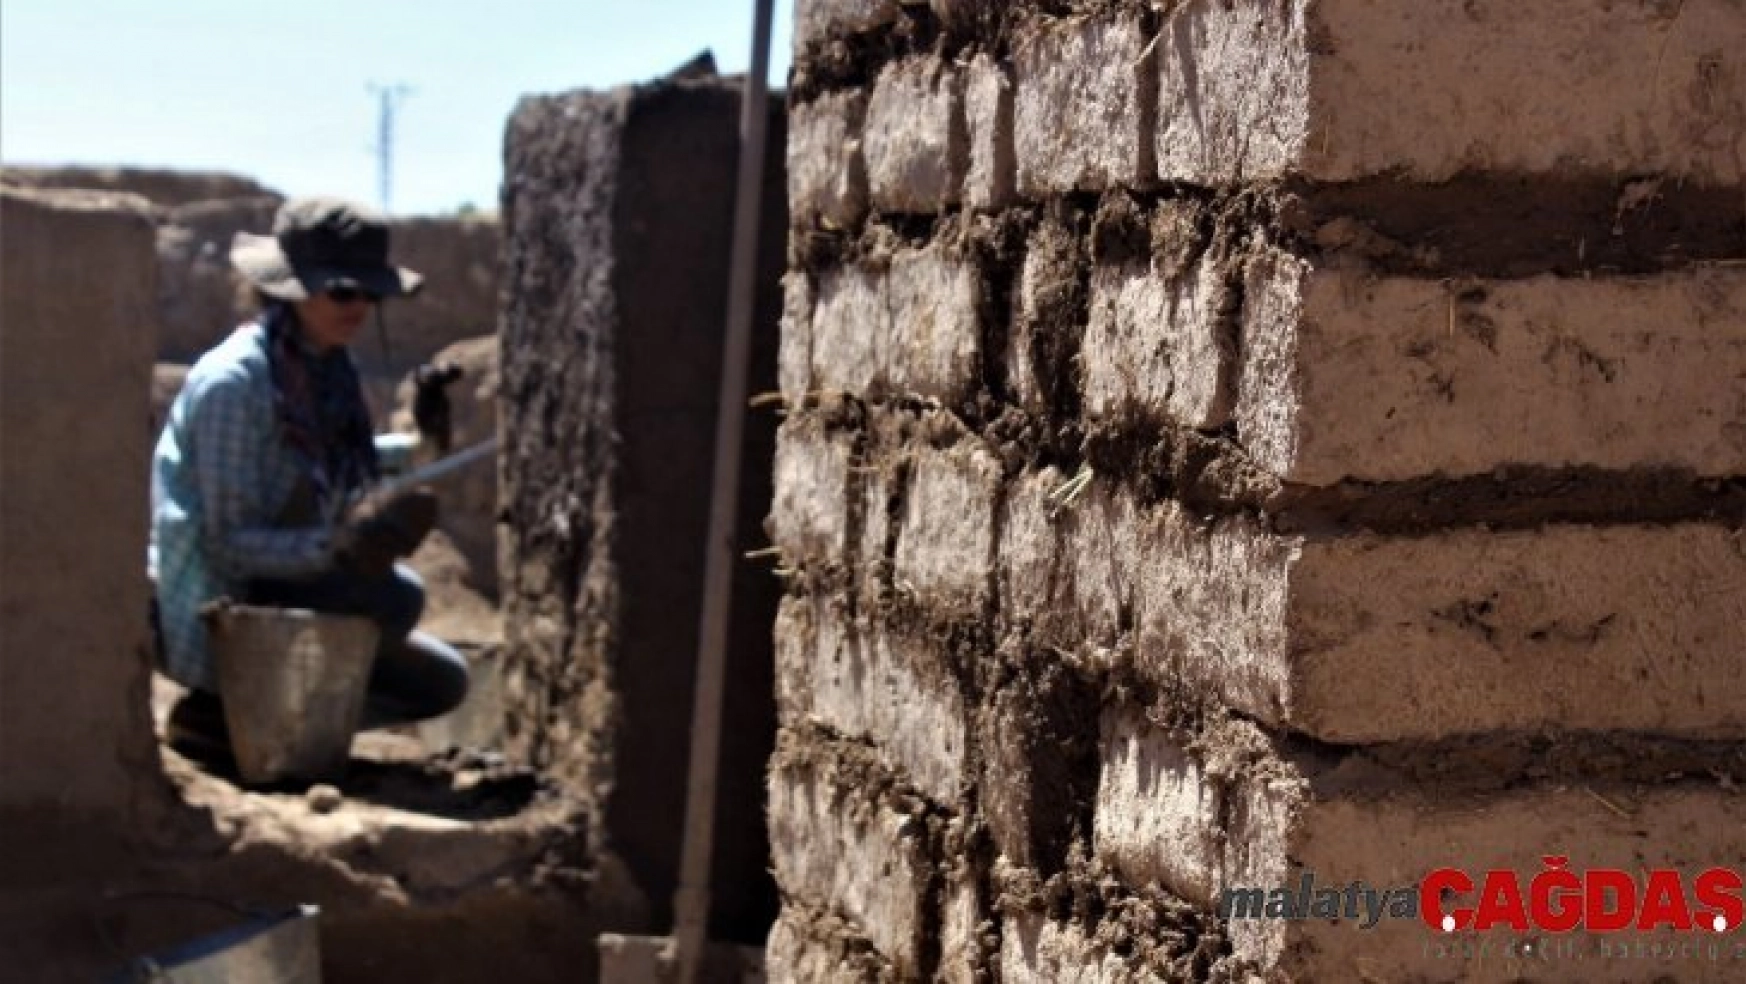 2 bin 700 yıllık Urartu evleri yeniden ayağa kaldırılıyor